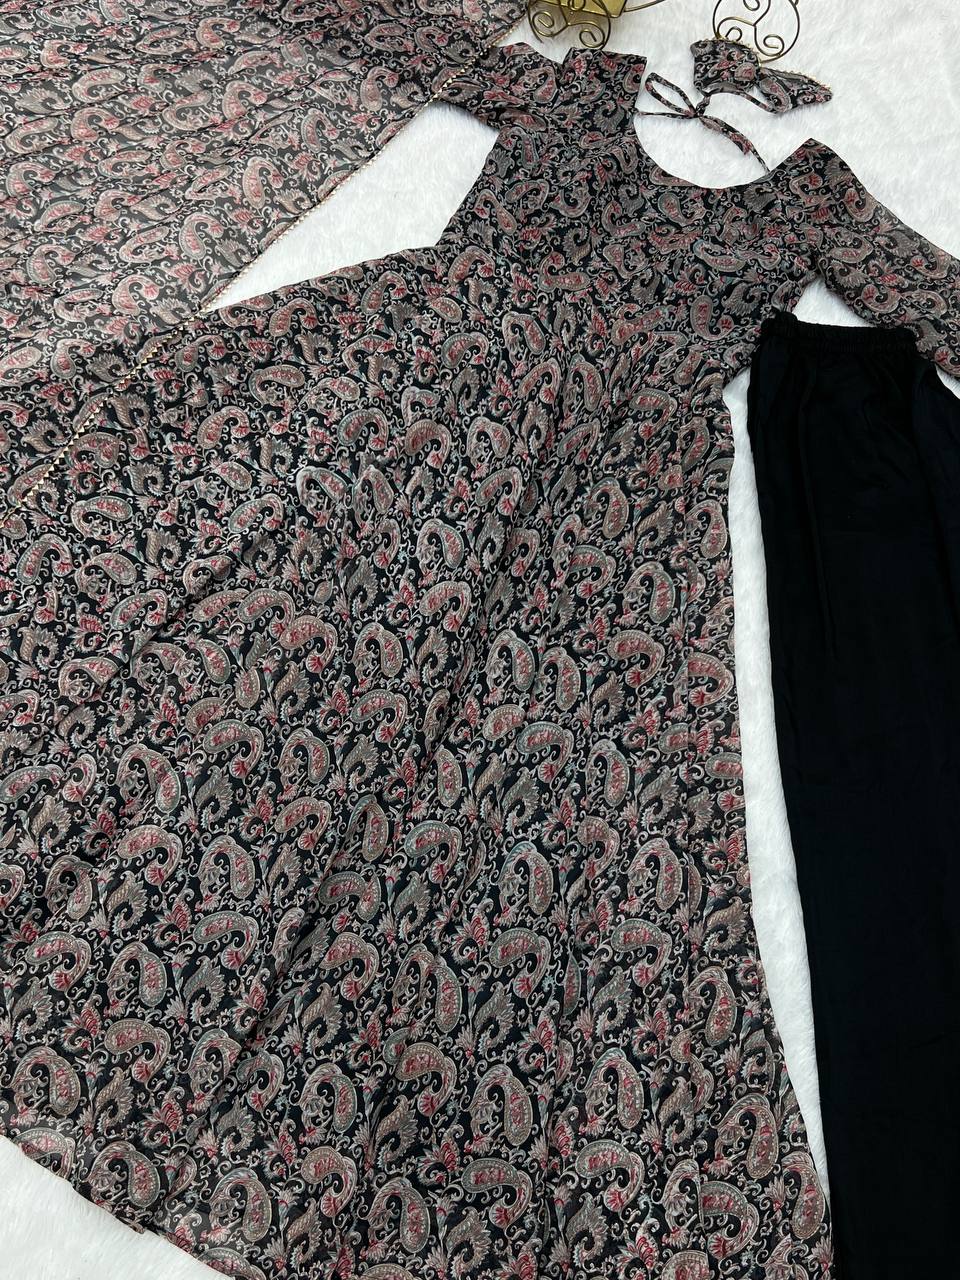 कस्टम महिला विस्कोस अबाया नाइटड्रेस - चीन पोशाक यह है ग्रायल की स्कर्ट कीमत